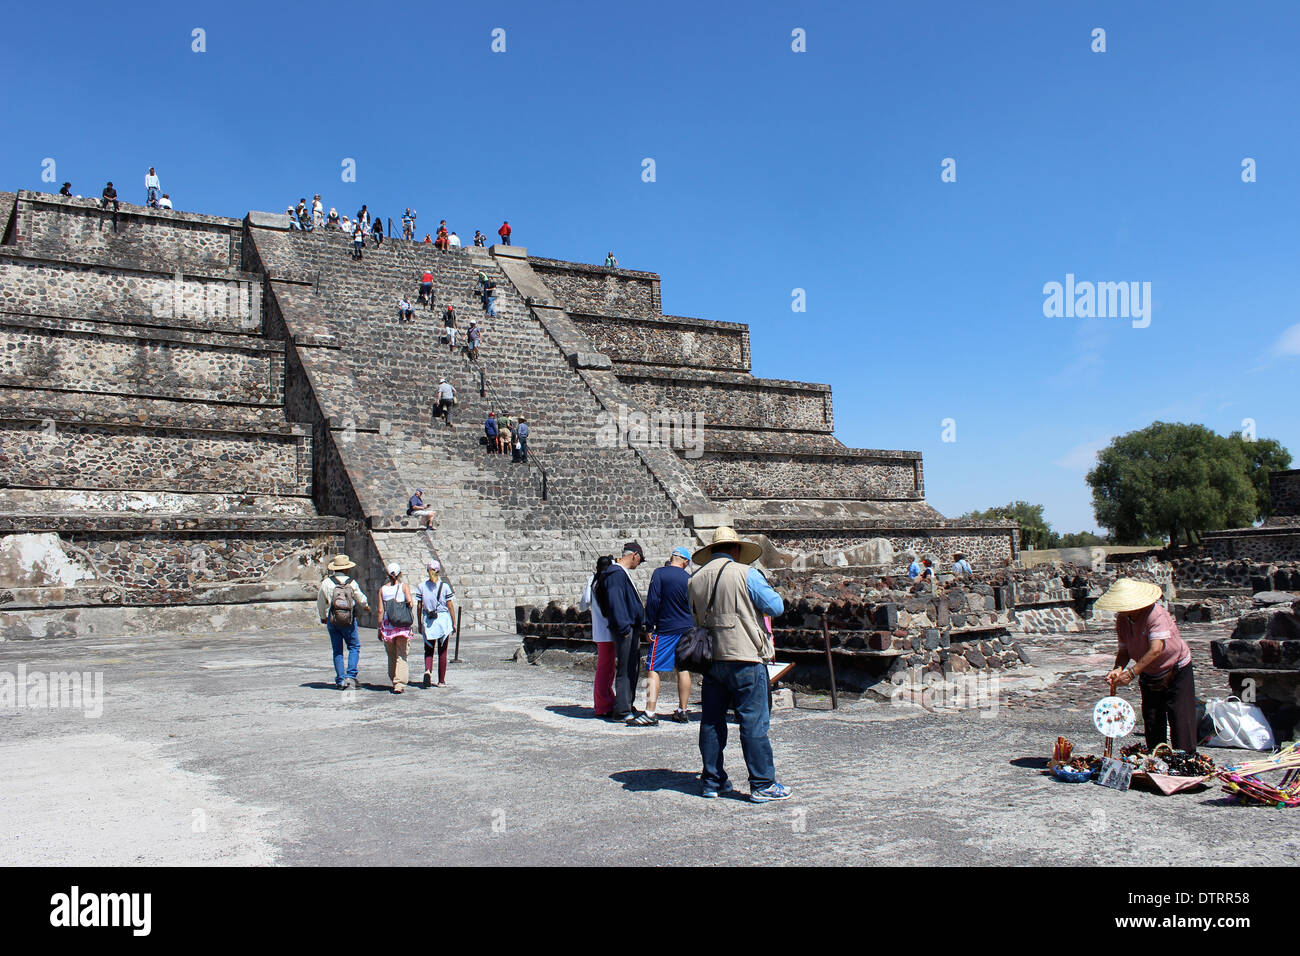 Étapes de la première partie de la Lune, pyramide Pyramides de Teotihuacan, Mexique - civilisation aztèque Banque D'Images